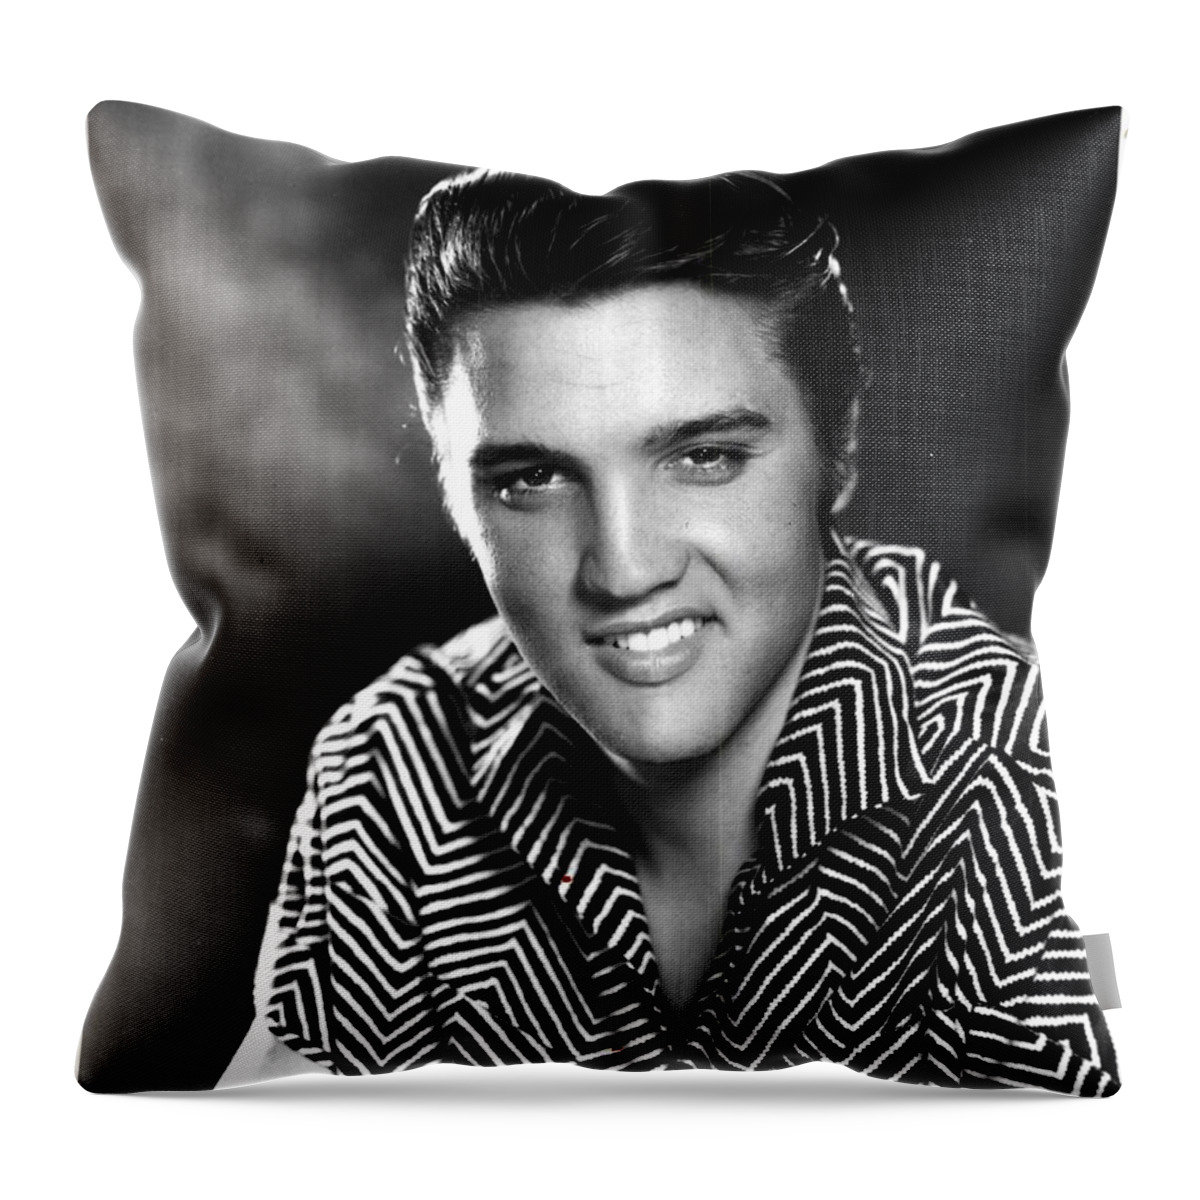 Elvis Throw Pillow featuring the digital art Elvis Presley by Elvis Presley